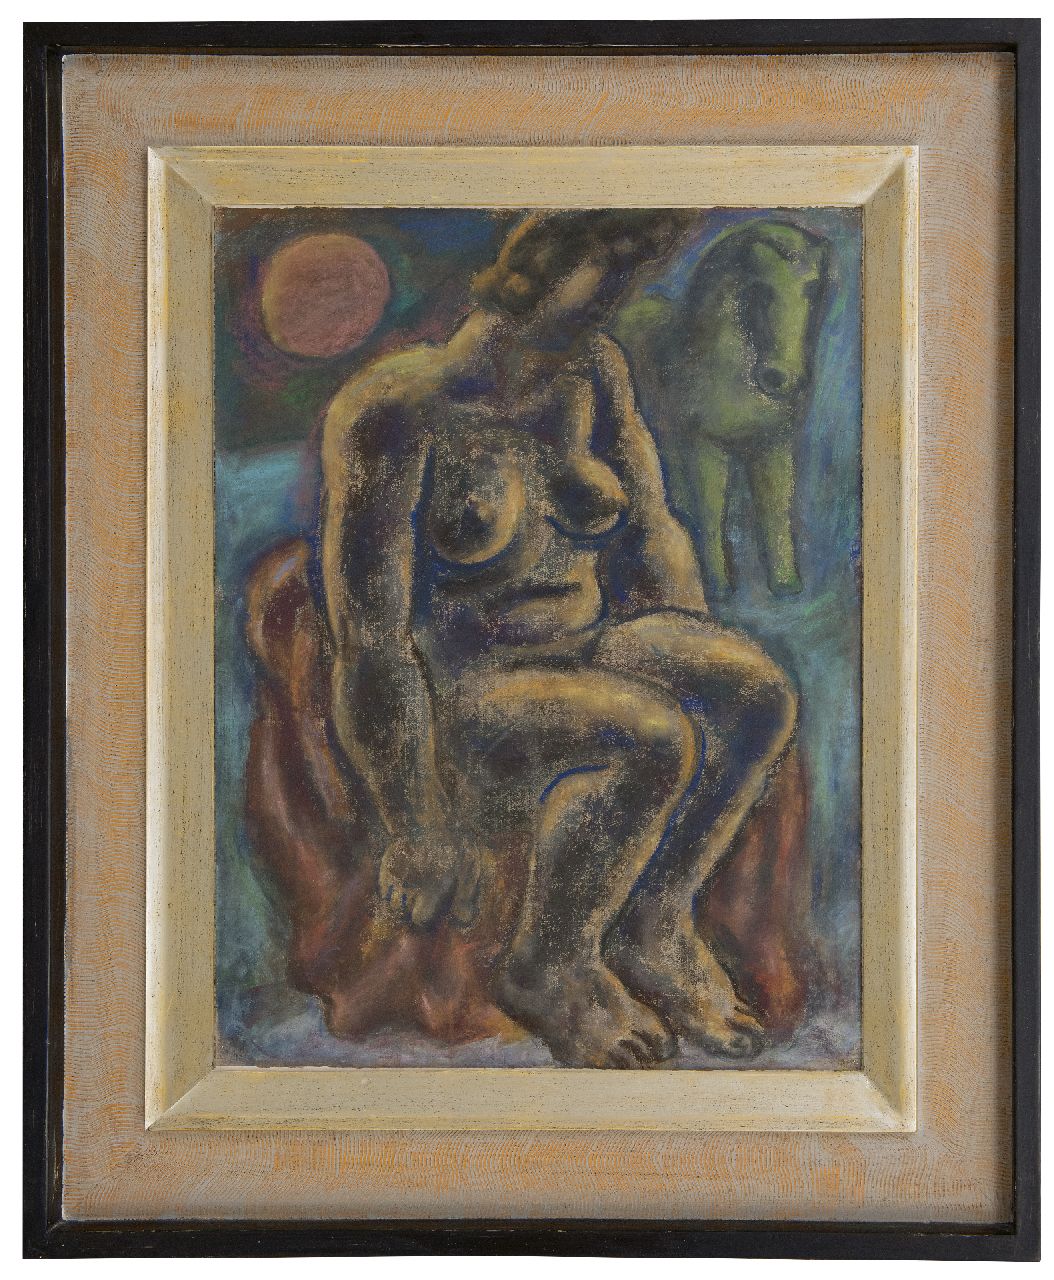 Gestel L.  | Leendert 'Leo' Gestel | Aquarellen en tekeningen te koop aangeboden | Zittende vrouw met paard, pastel op papier 63,0 x 48,0 cm, gesigneerd linksonder (resten) en gedateerd 1932 (vaag)